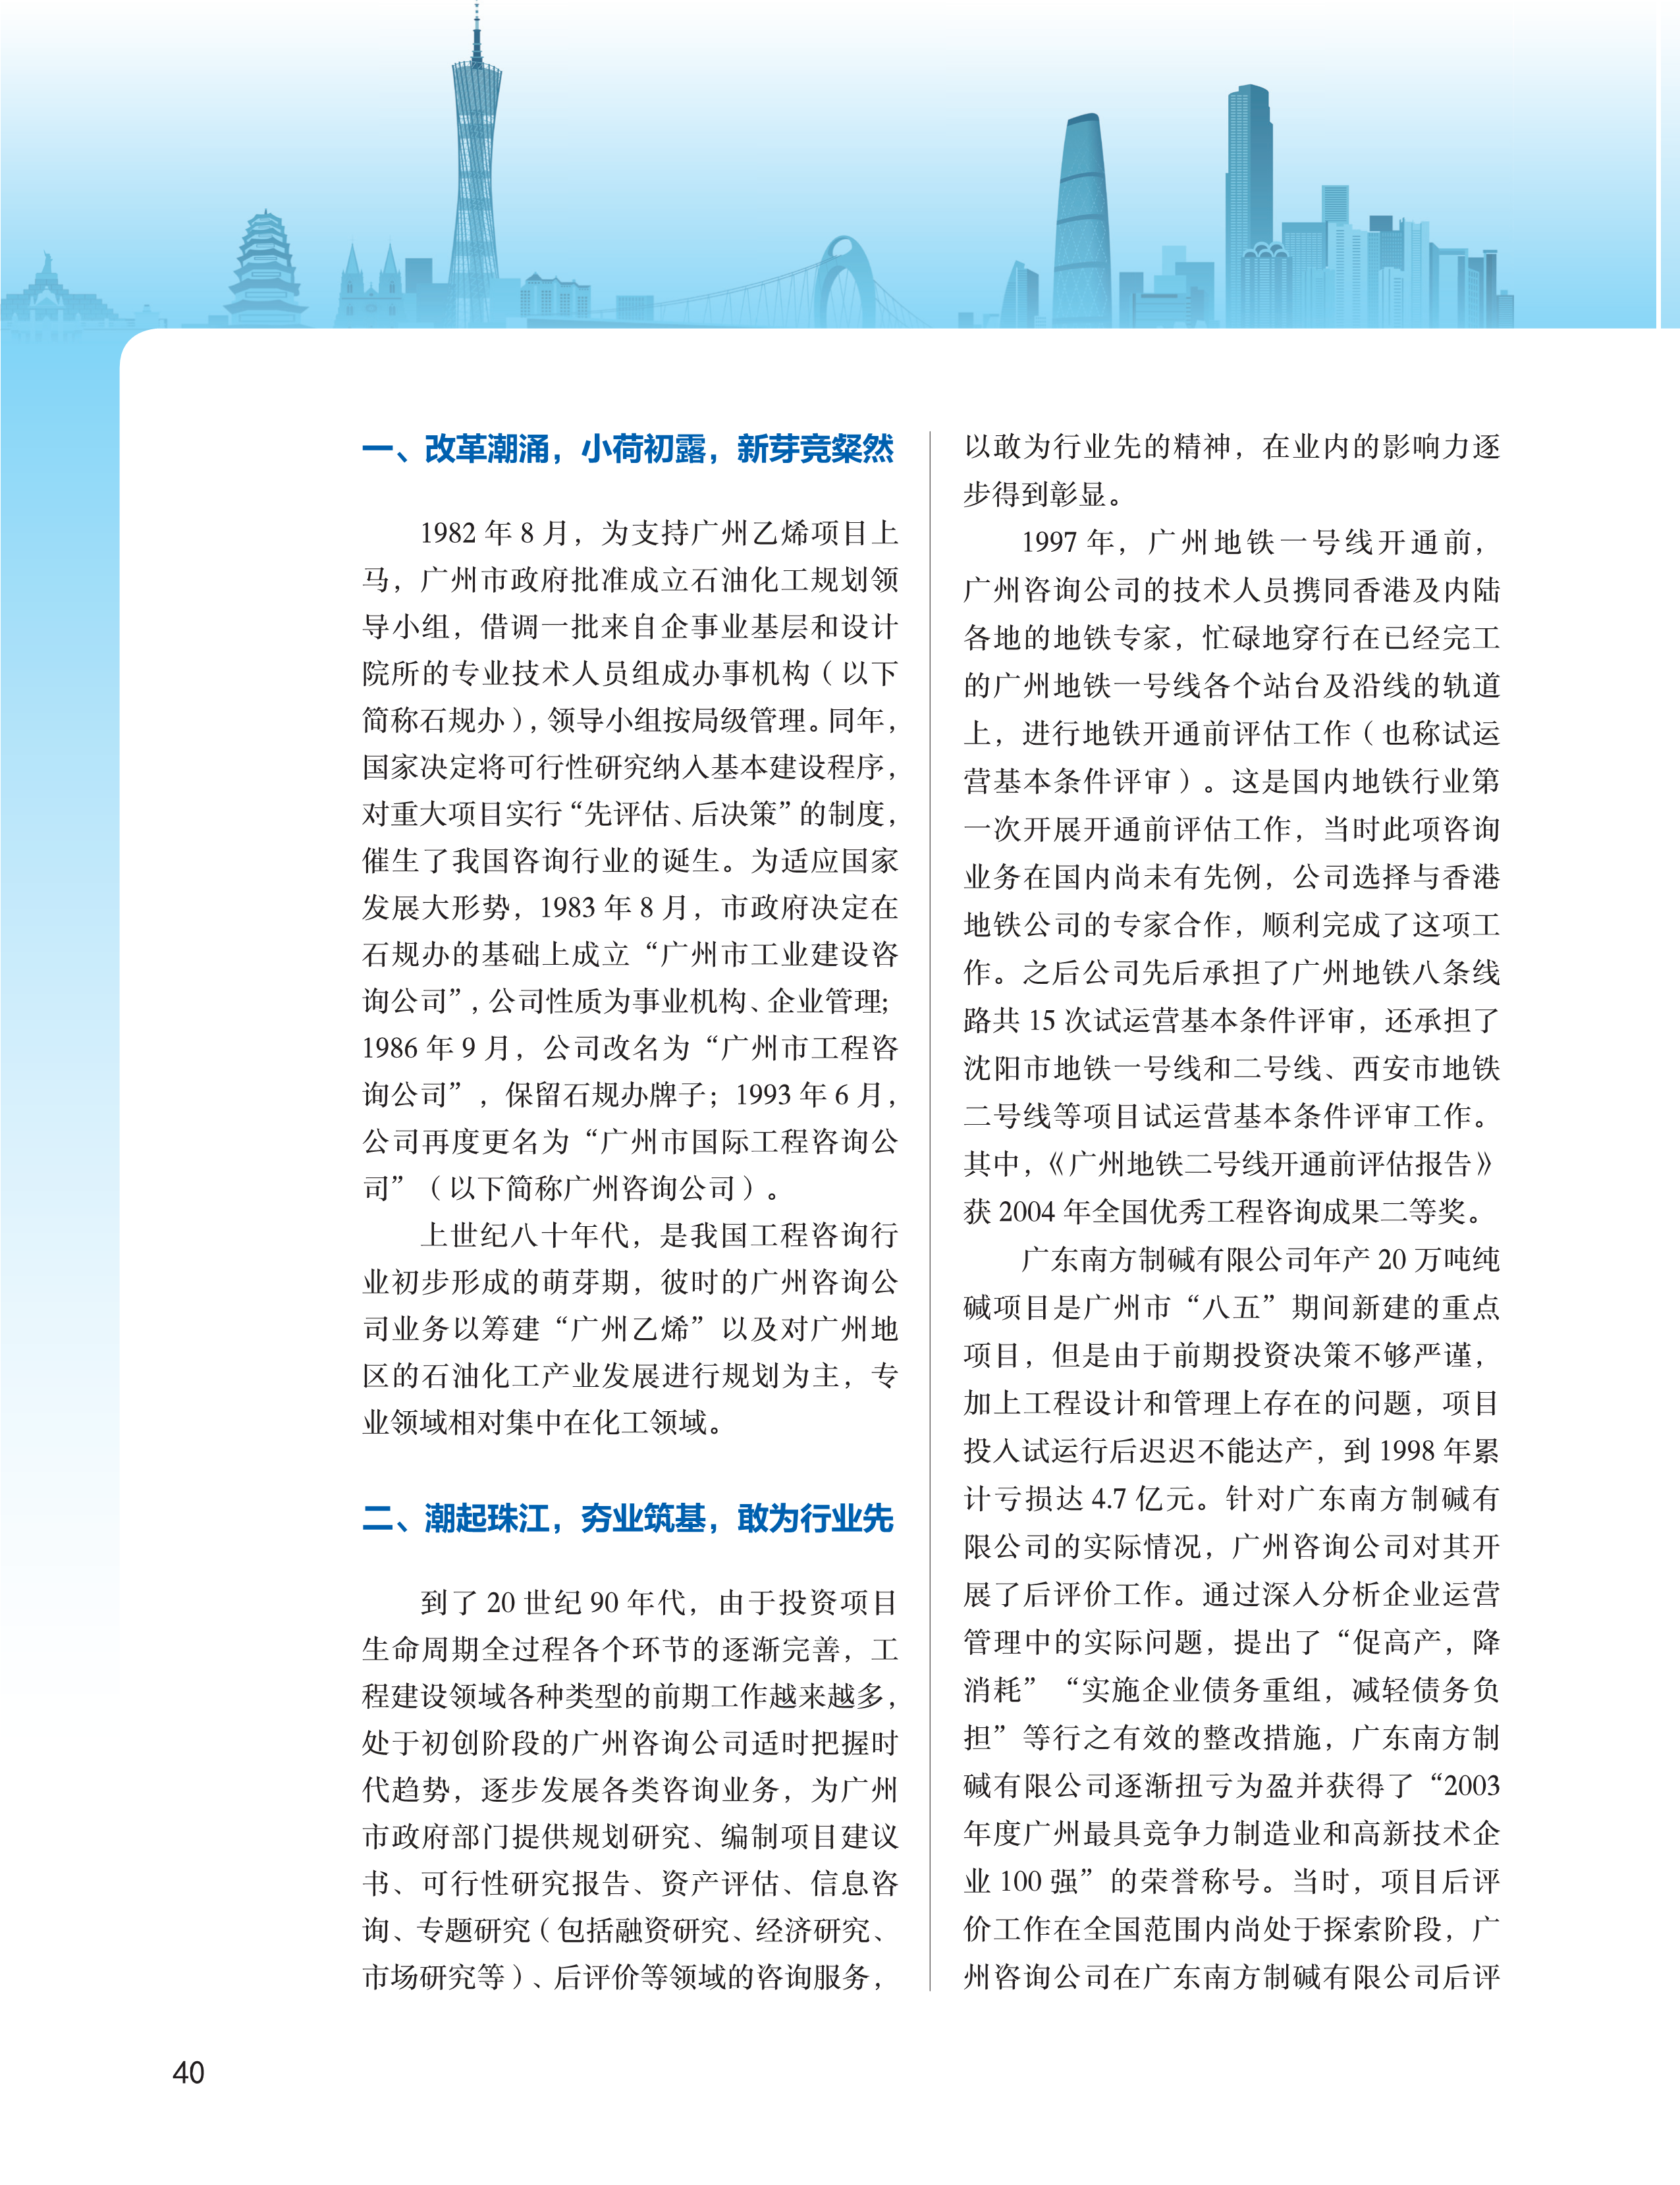 中国工程咨询2019广东专刊_40